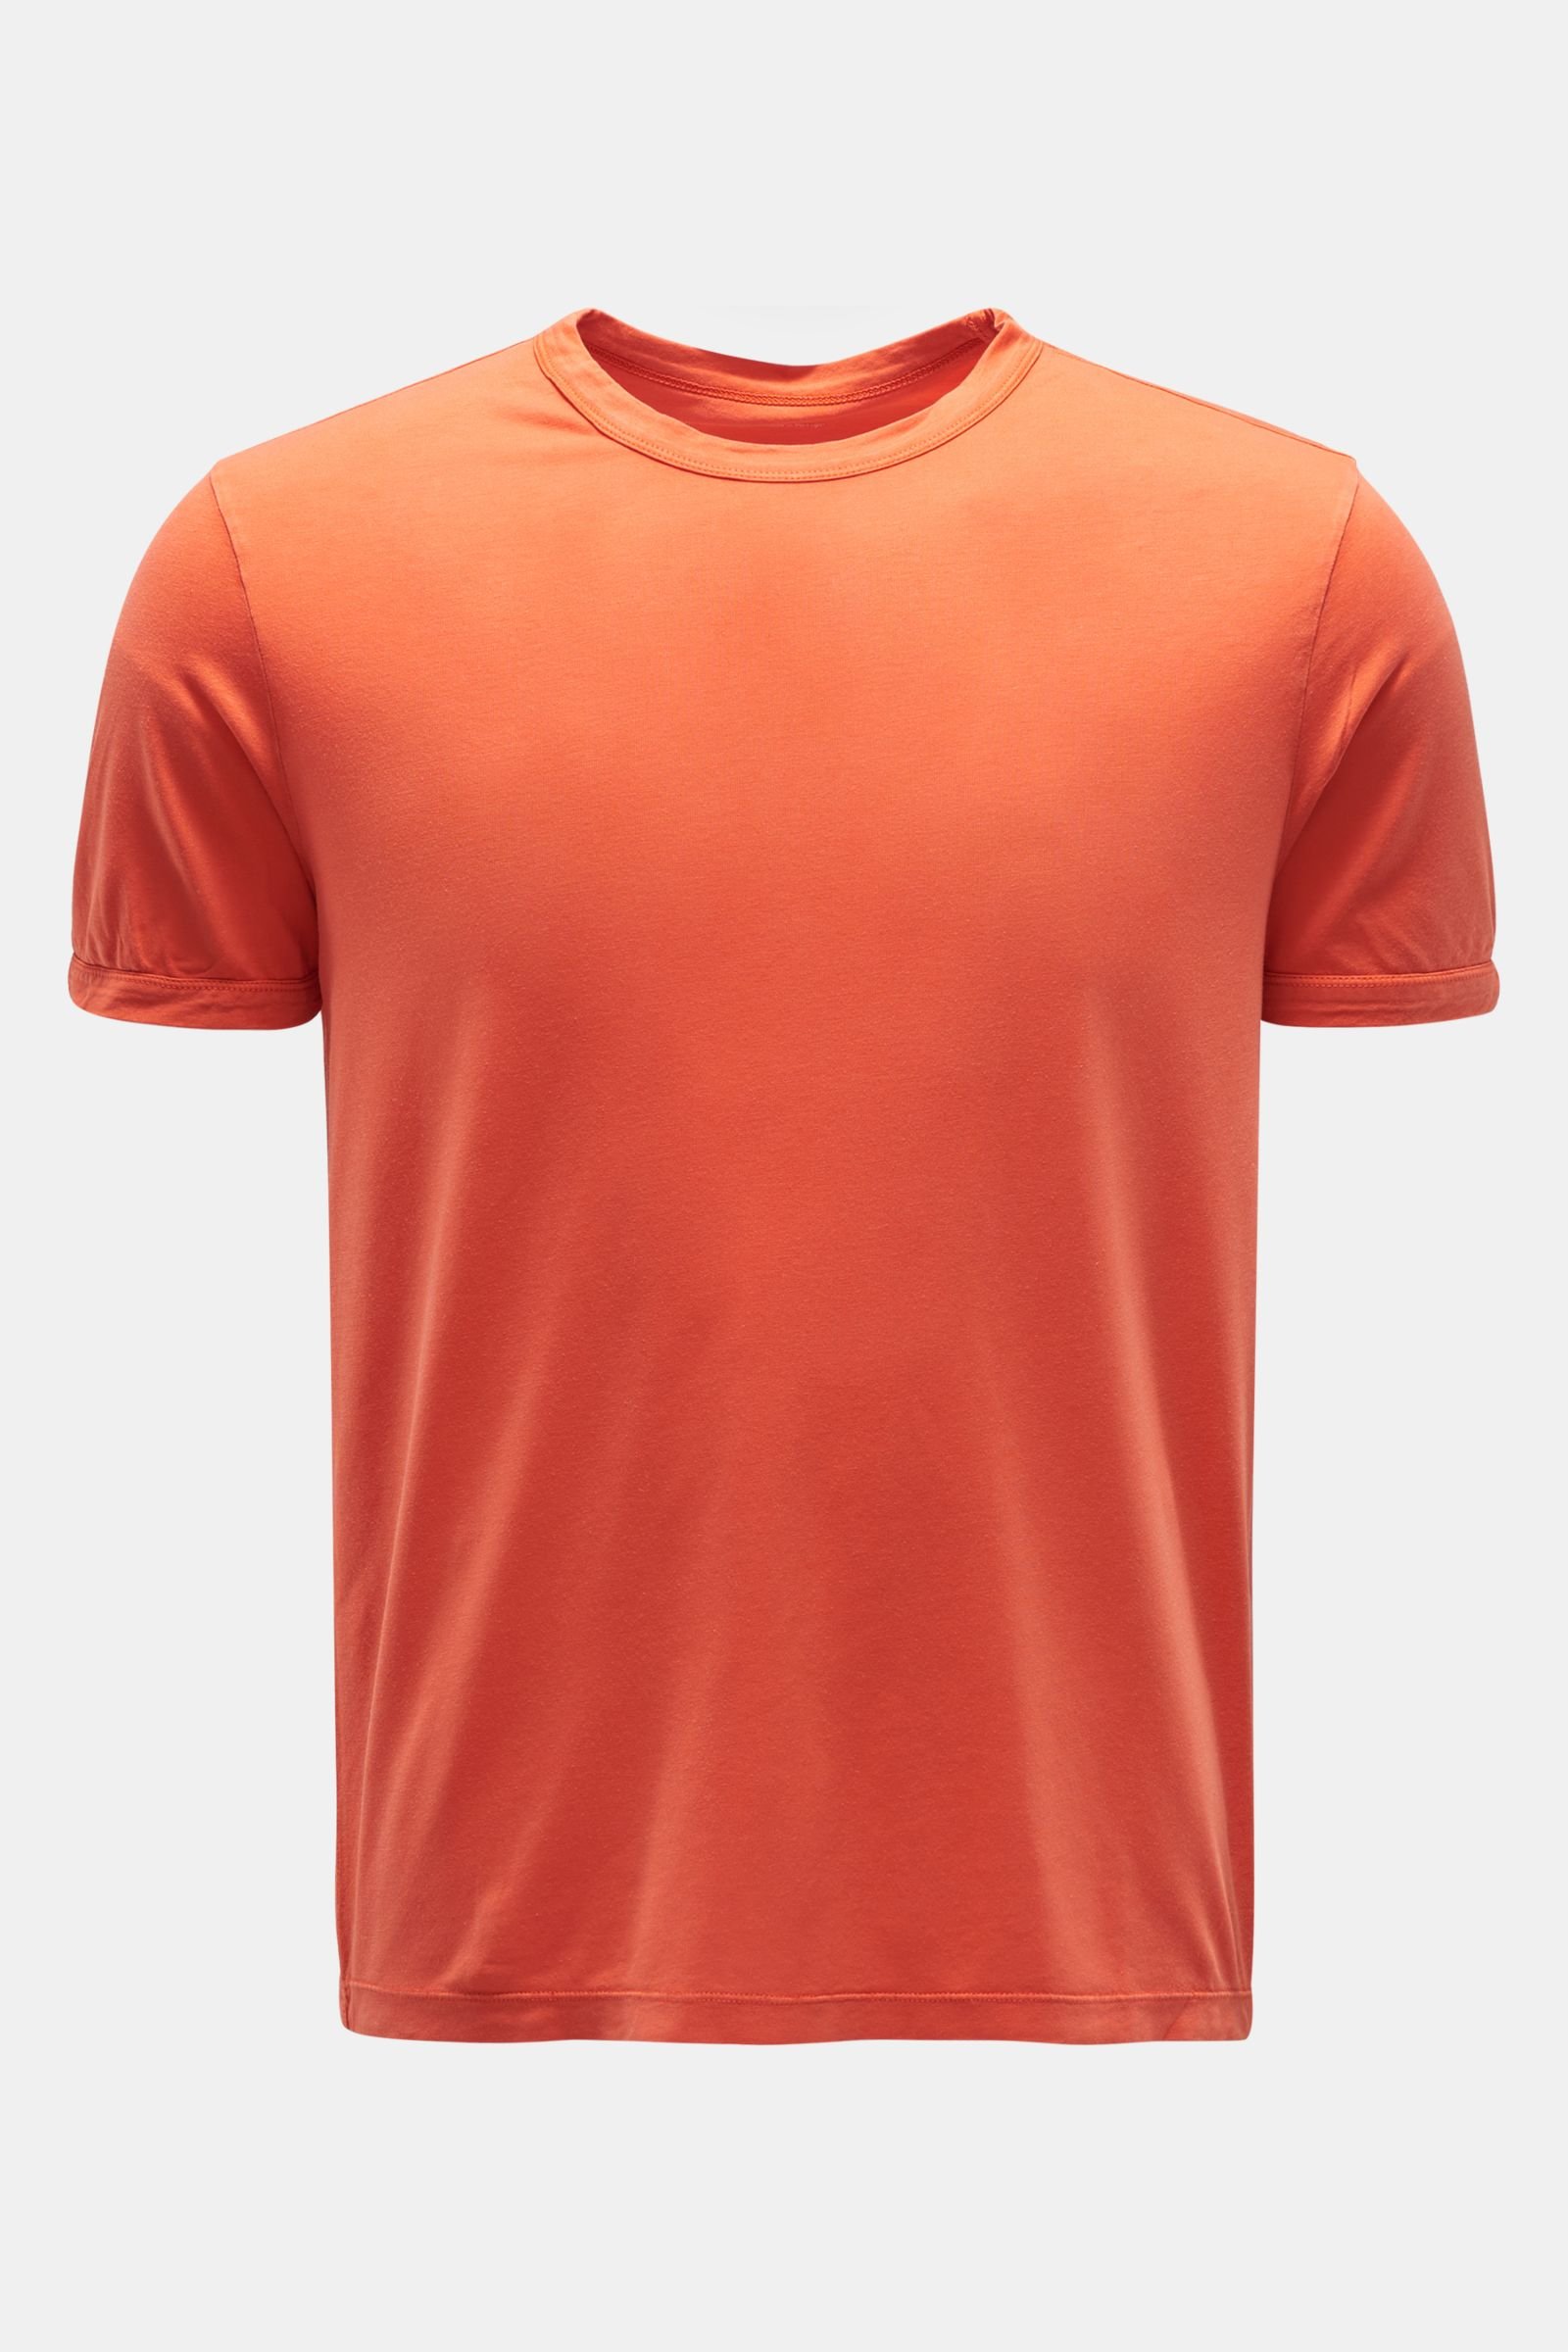 Rundhals-T-Shirt orange